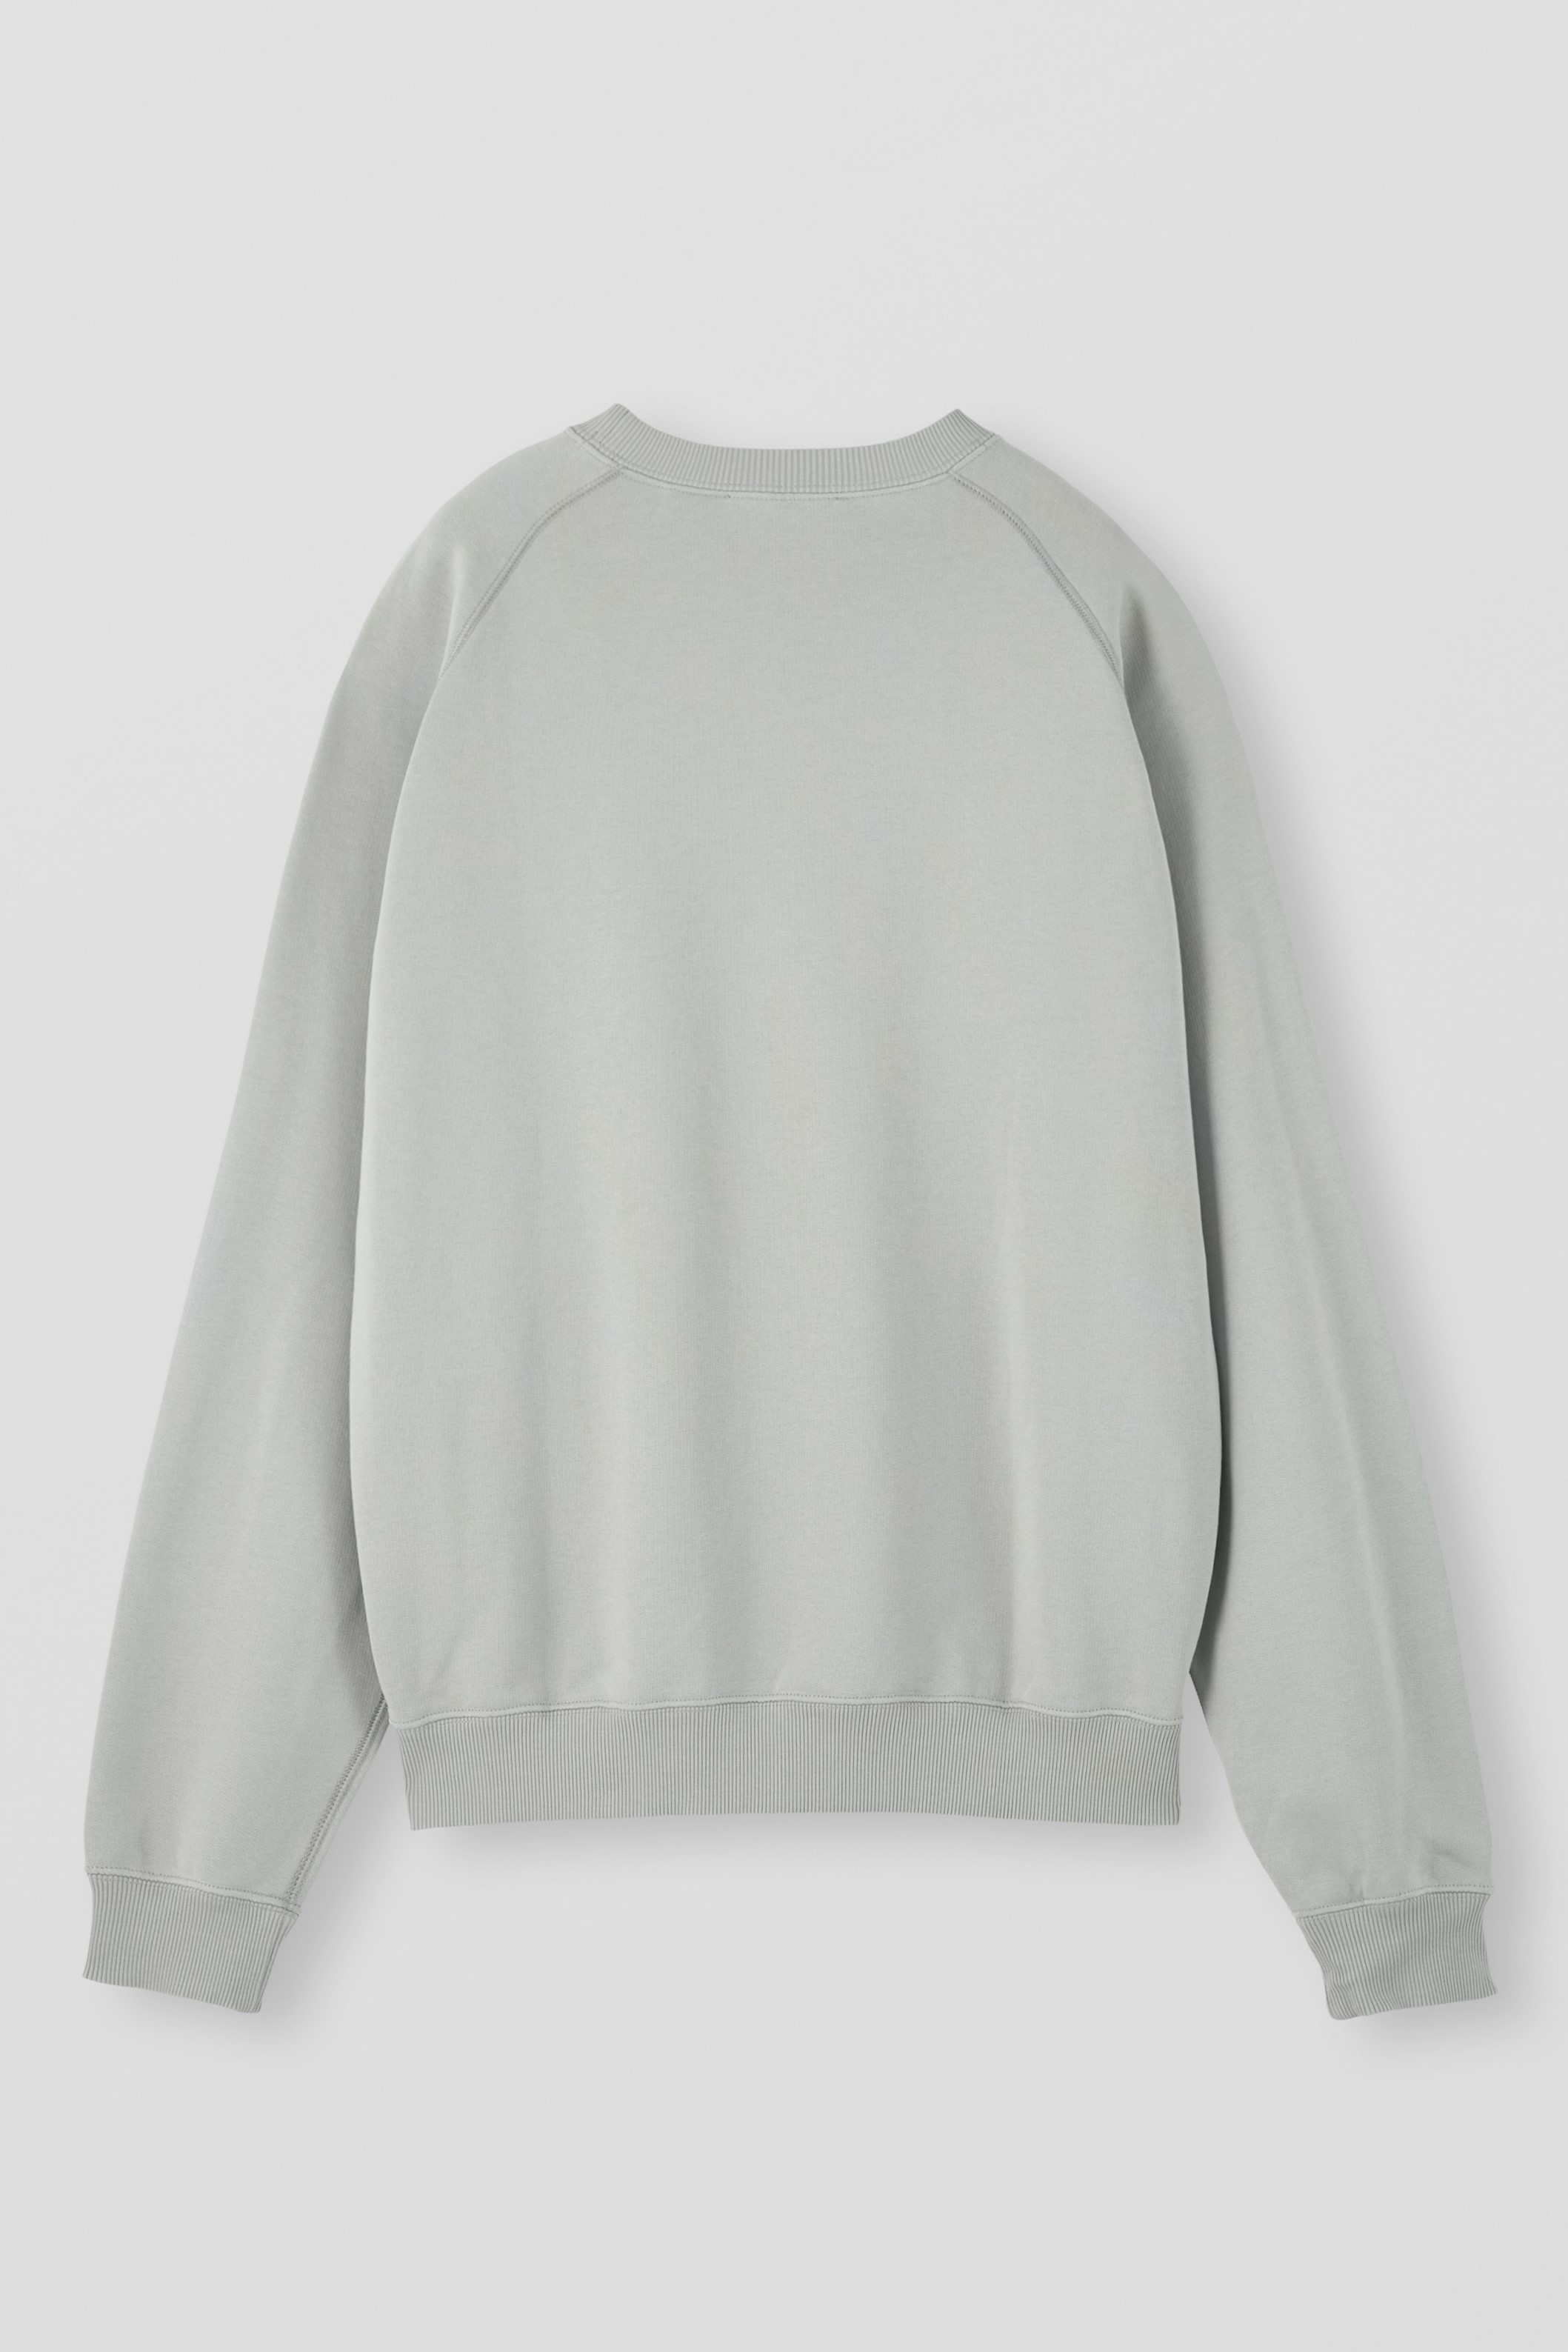 APPLIED ART FORMS Raglan Sweater in Ghost Grey XXL